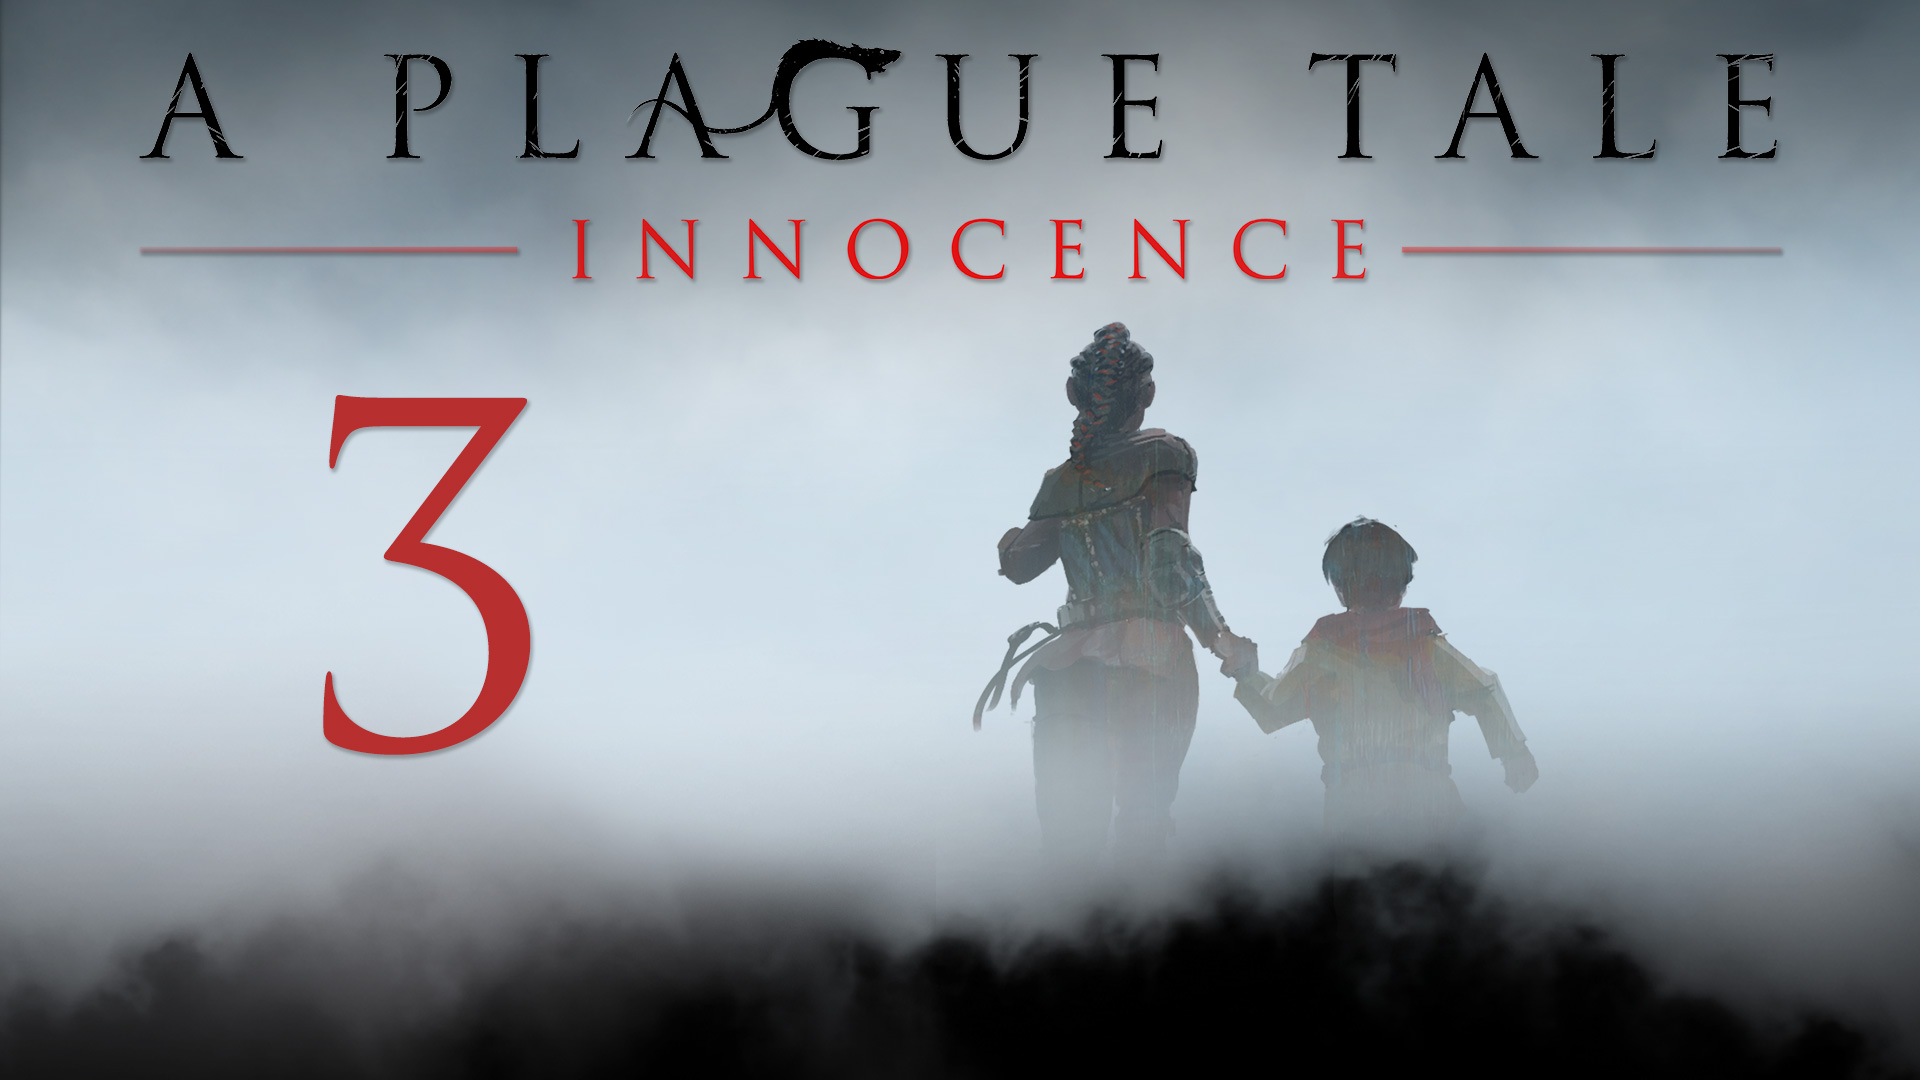 A Plague Tale: Innocence - Глава 3: Воздаяние - Прохождение игры на русском [#3] | PC (2019 г.)